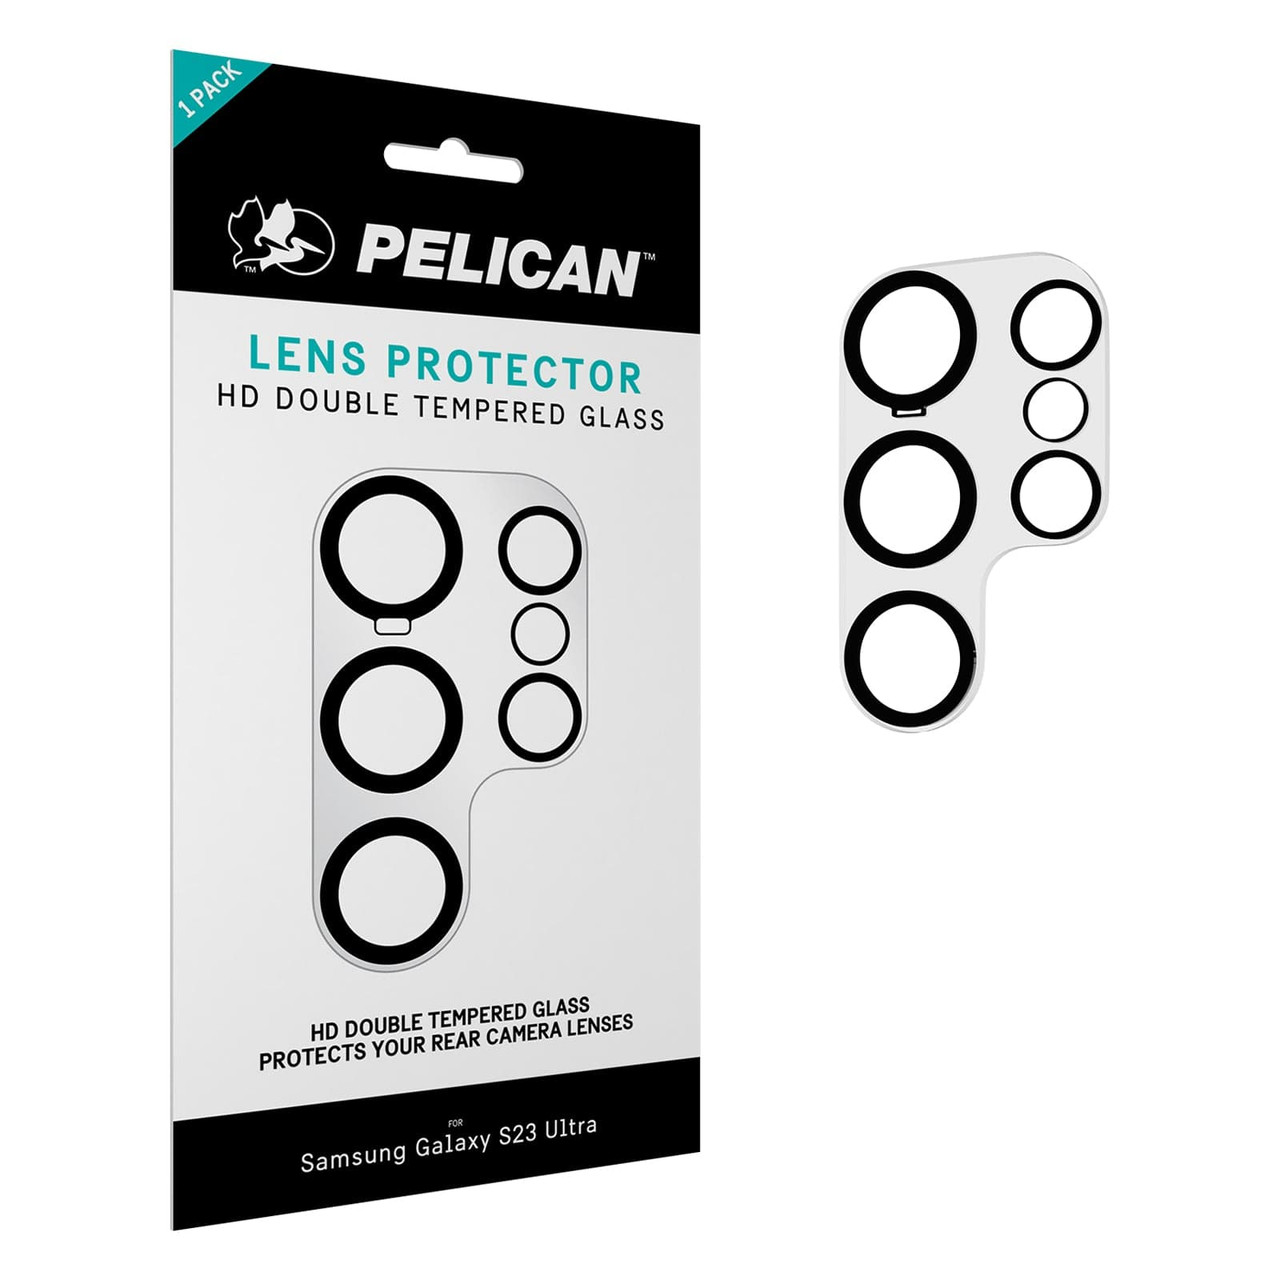 Pelican Aluminum Ring Lens Protectors - Galaxy S23 Ultra